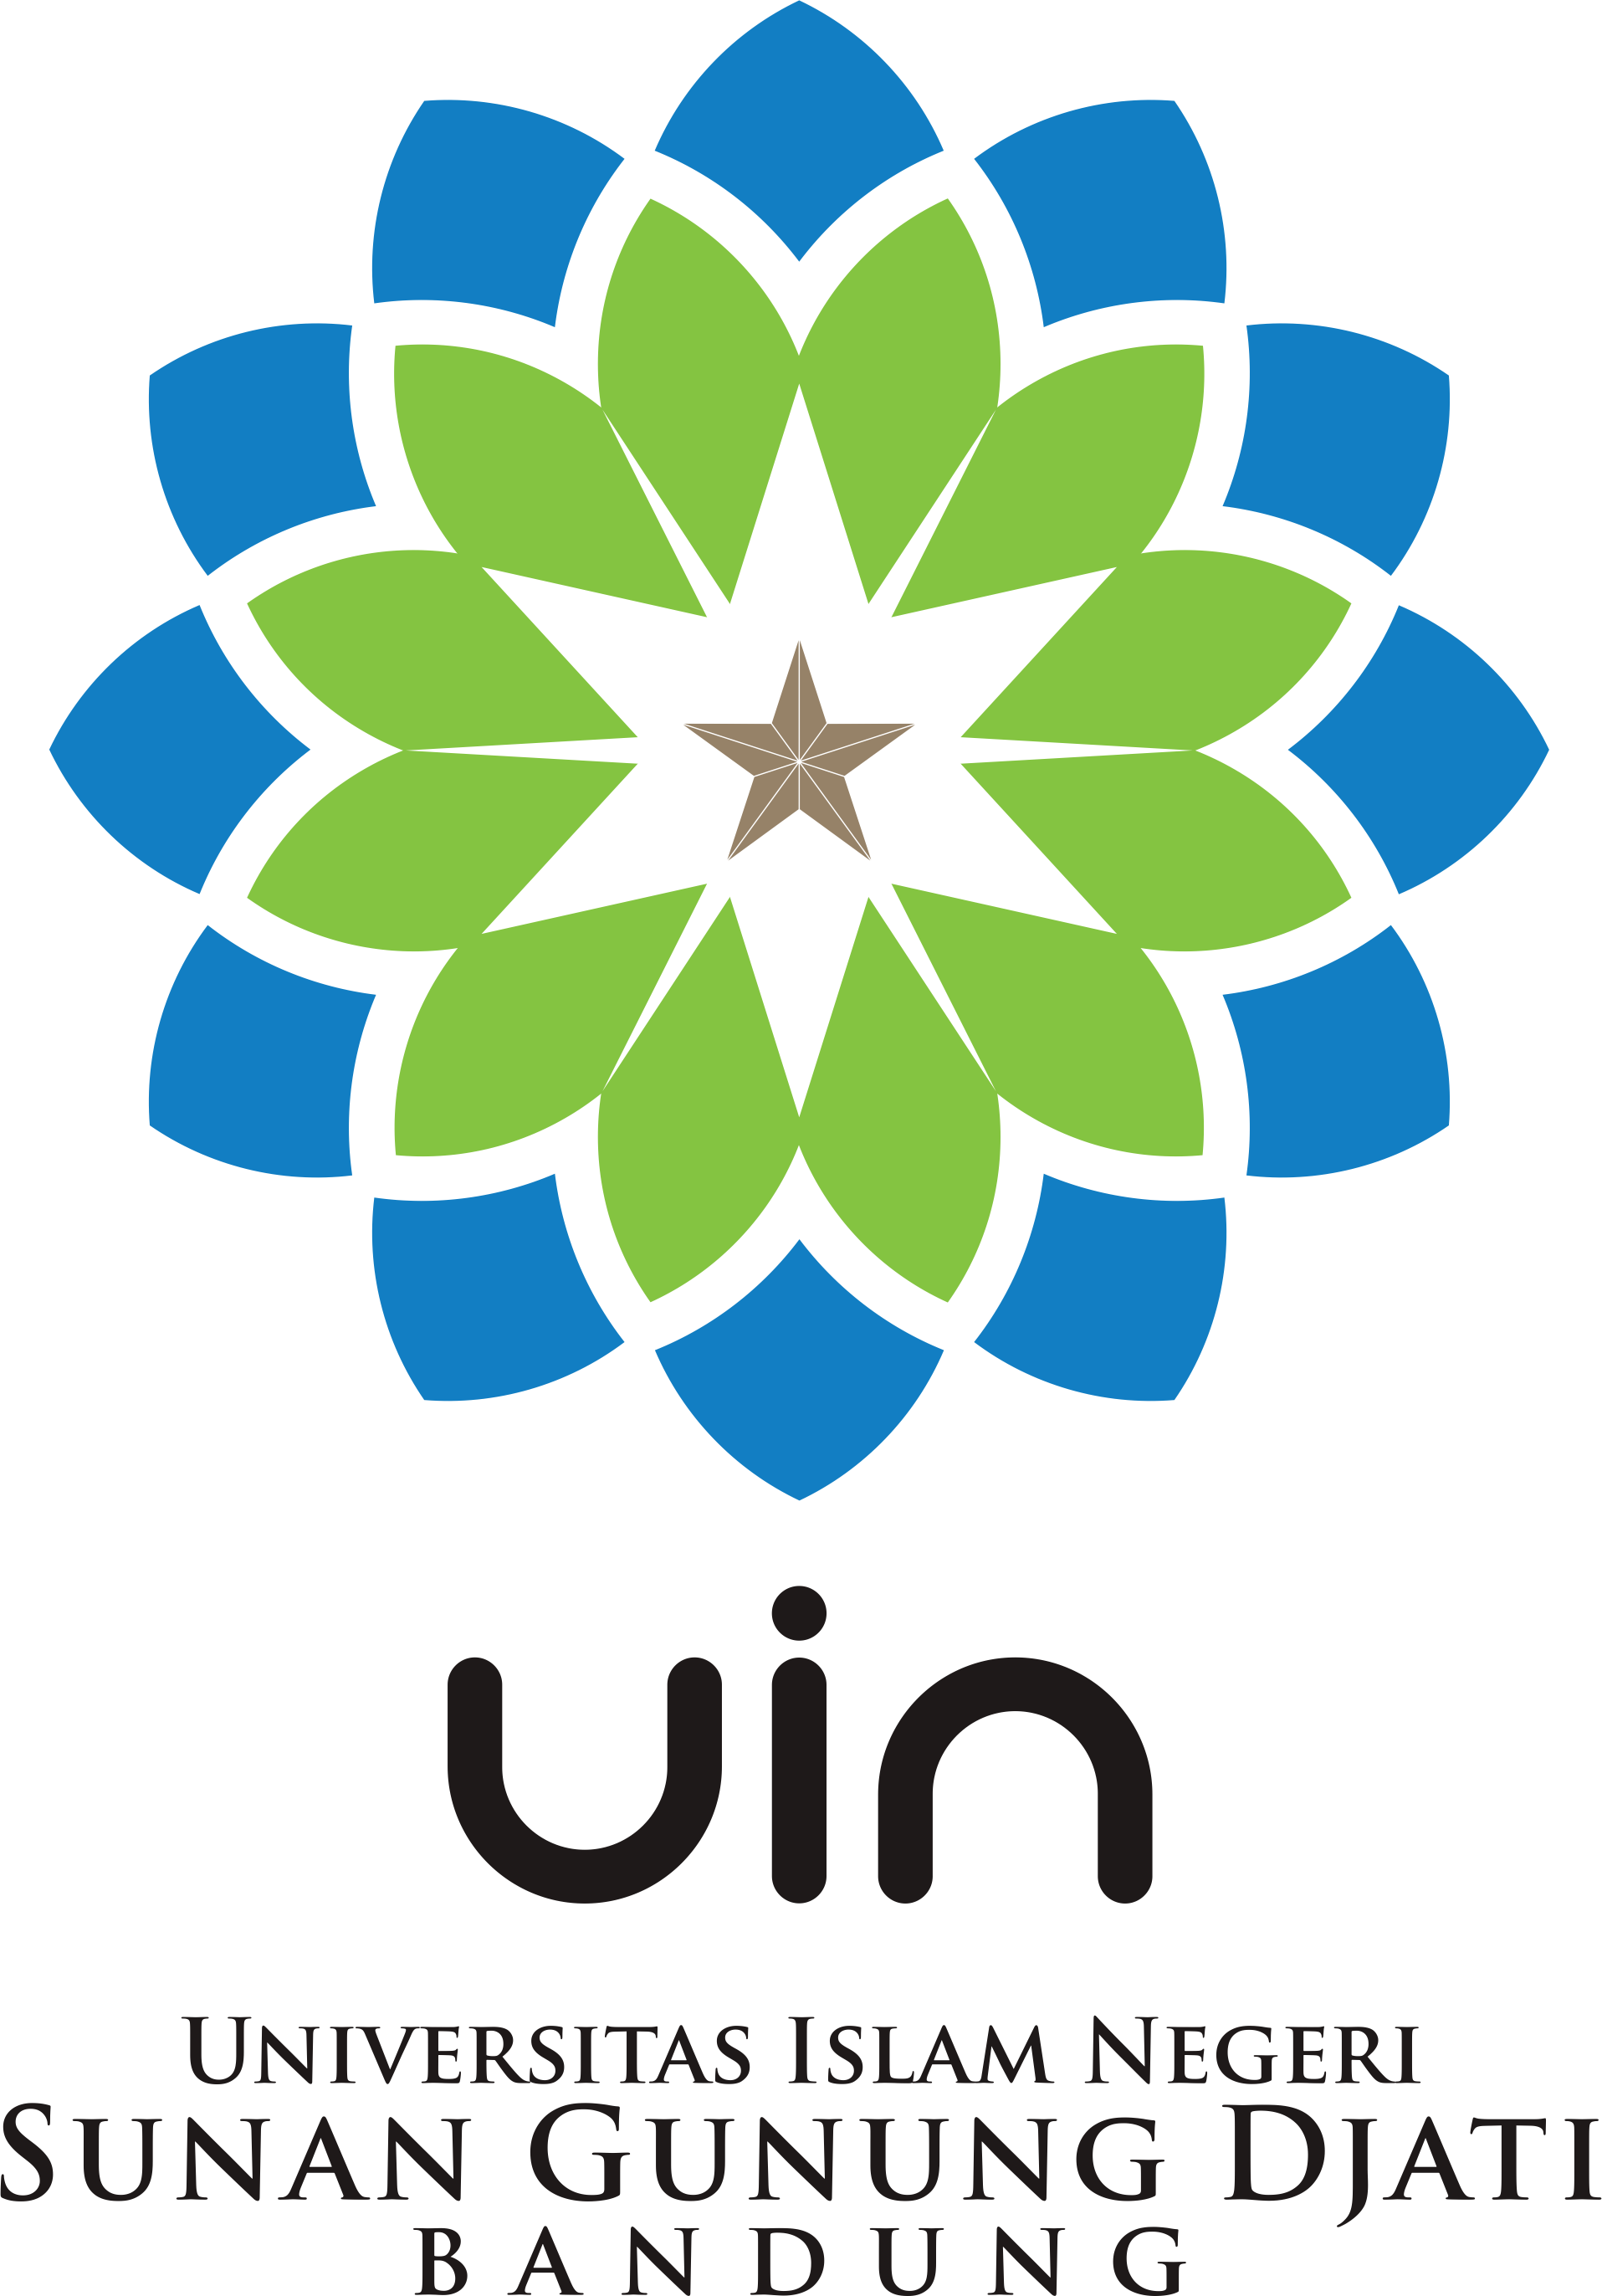 Logo Uin Sunan Gunung Djati Bandung Lautan Imagesee The Best Porn Website